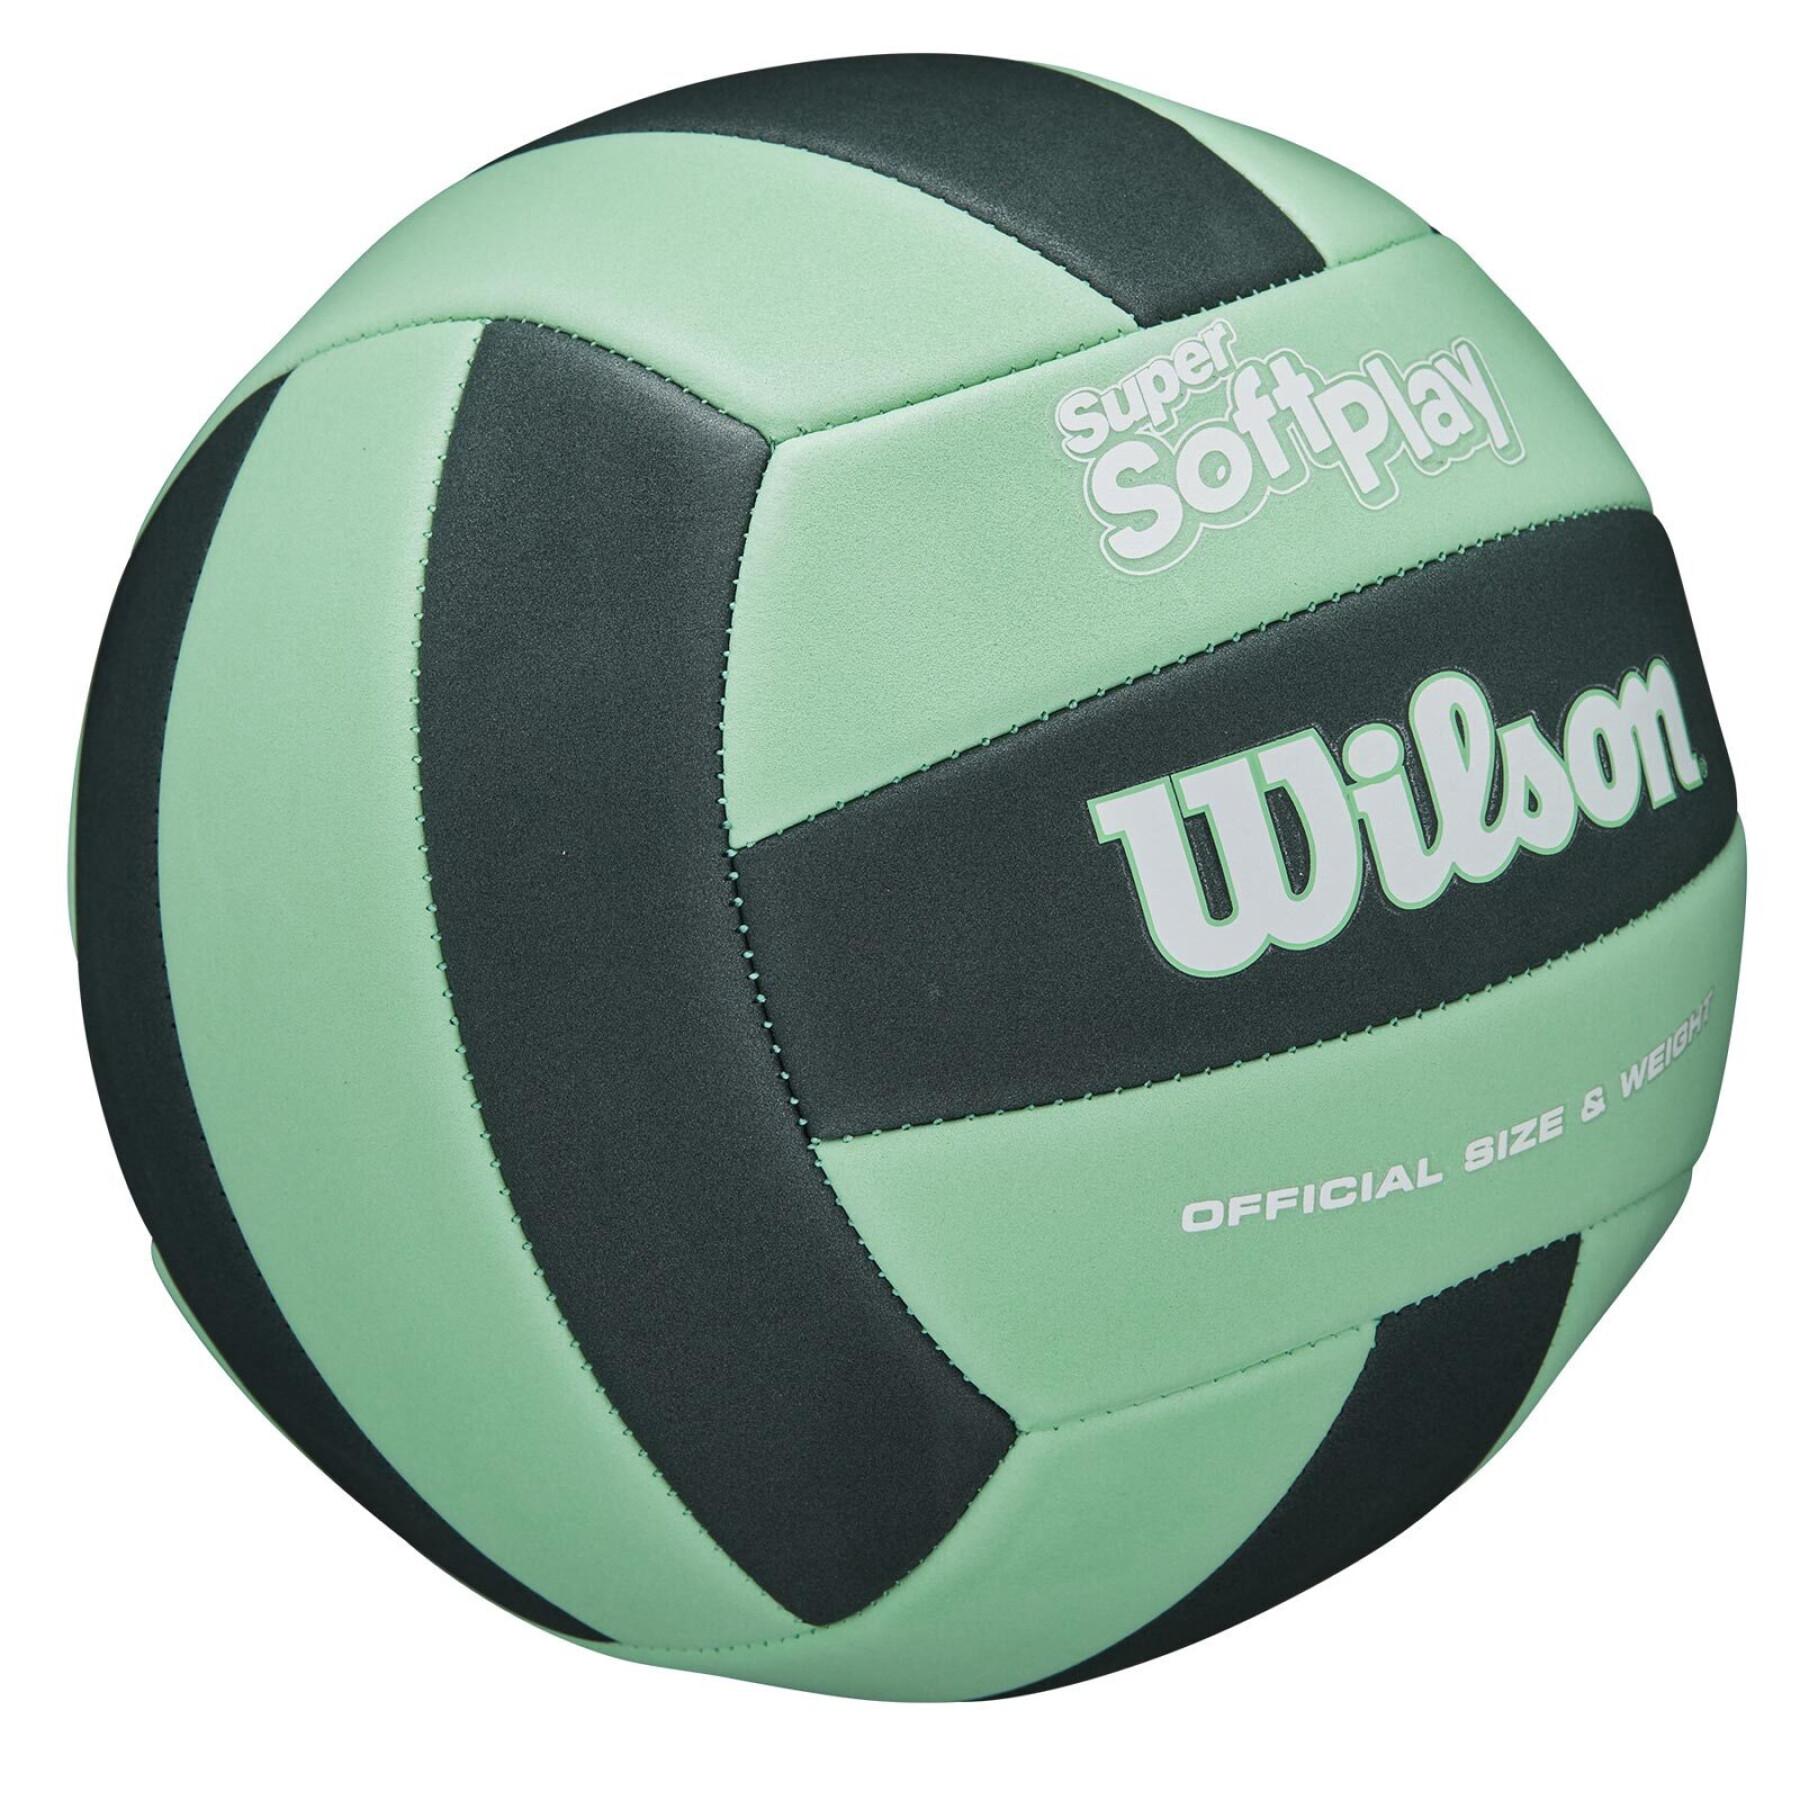 Ball Wilson Super Soft